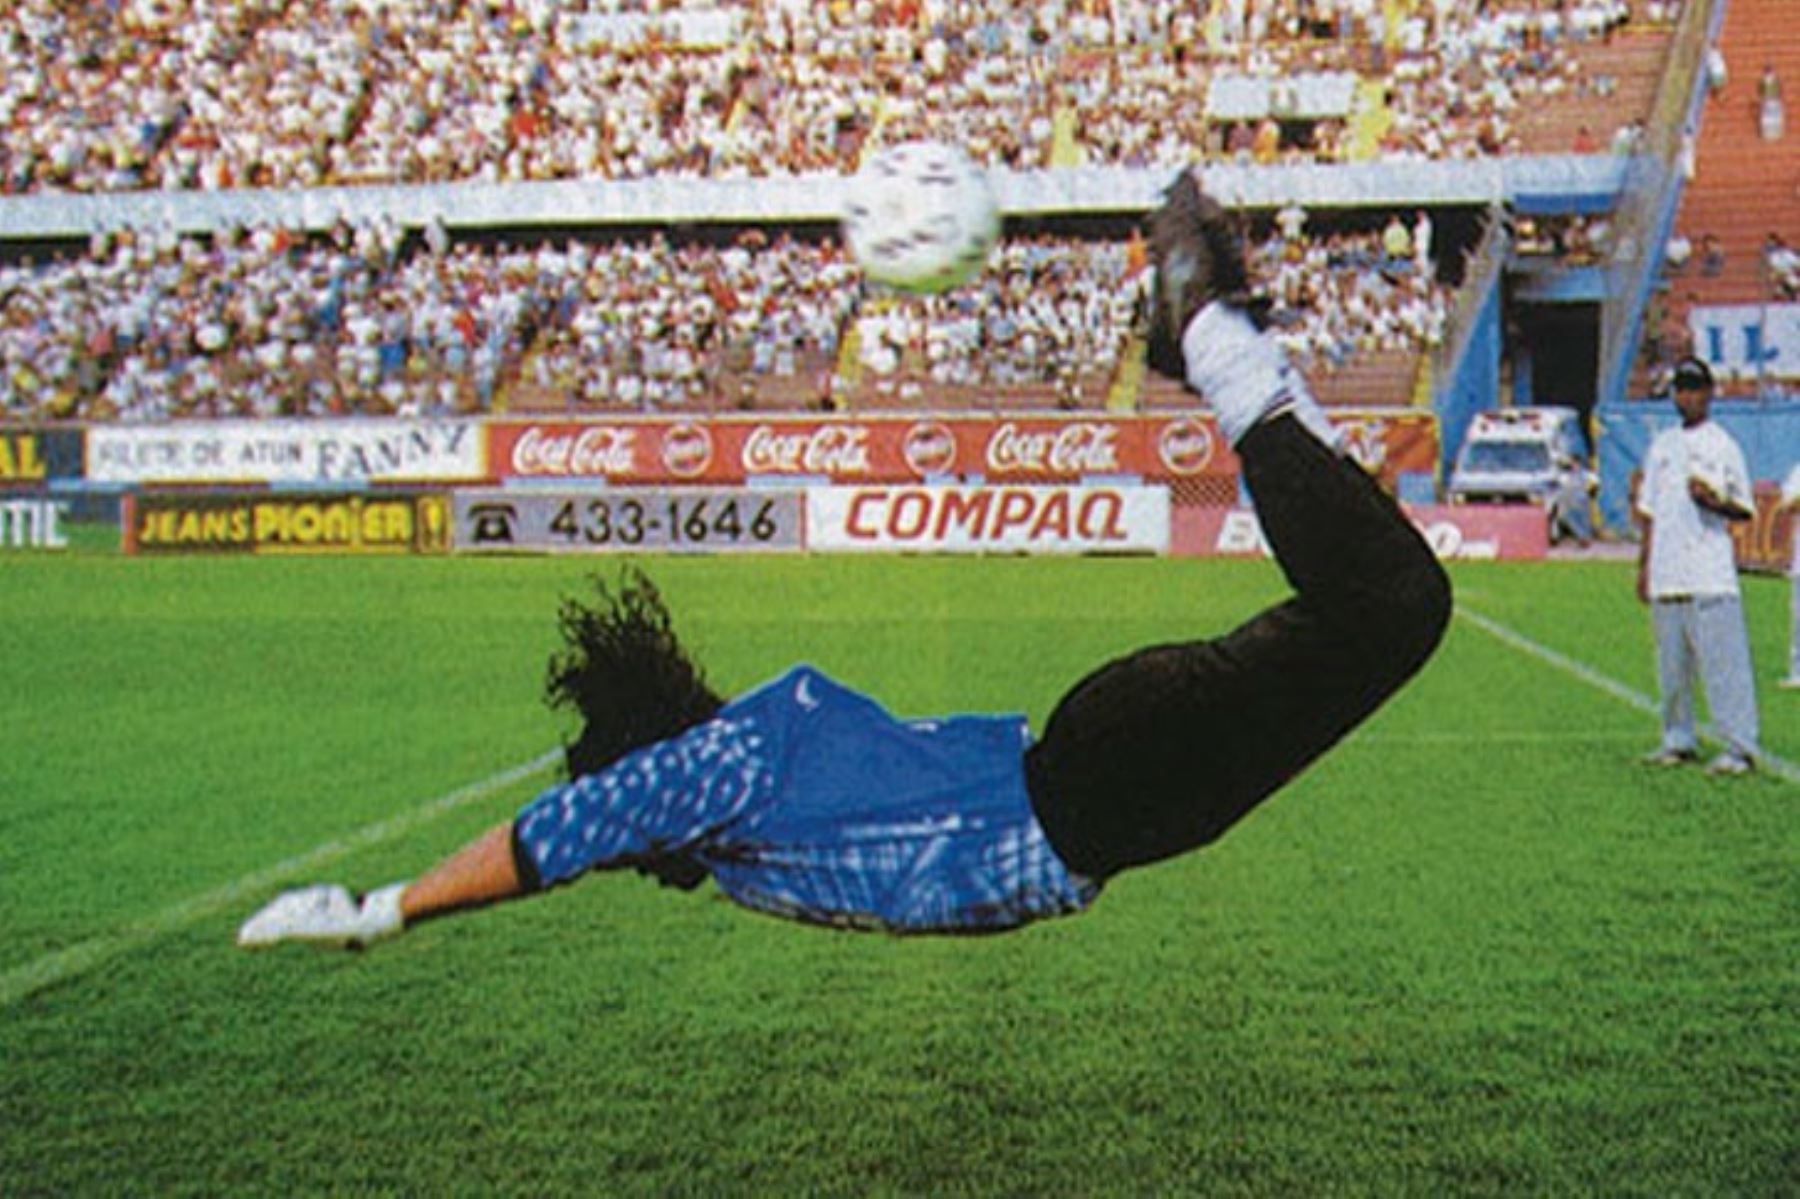 La tapada del escorpión, espectacular jugada defensiva con el sello del colombiano René Higuita. Foto: Conmebol/Cortesía.